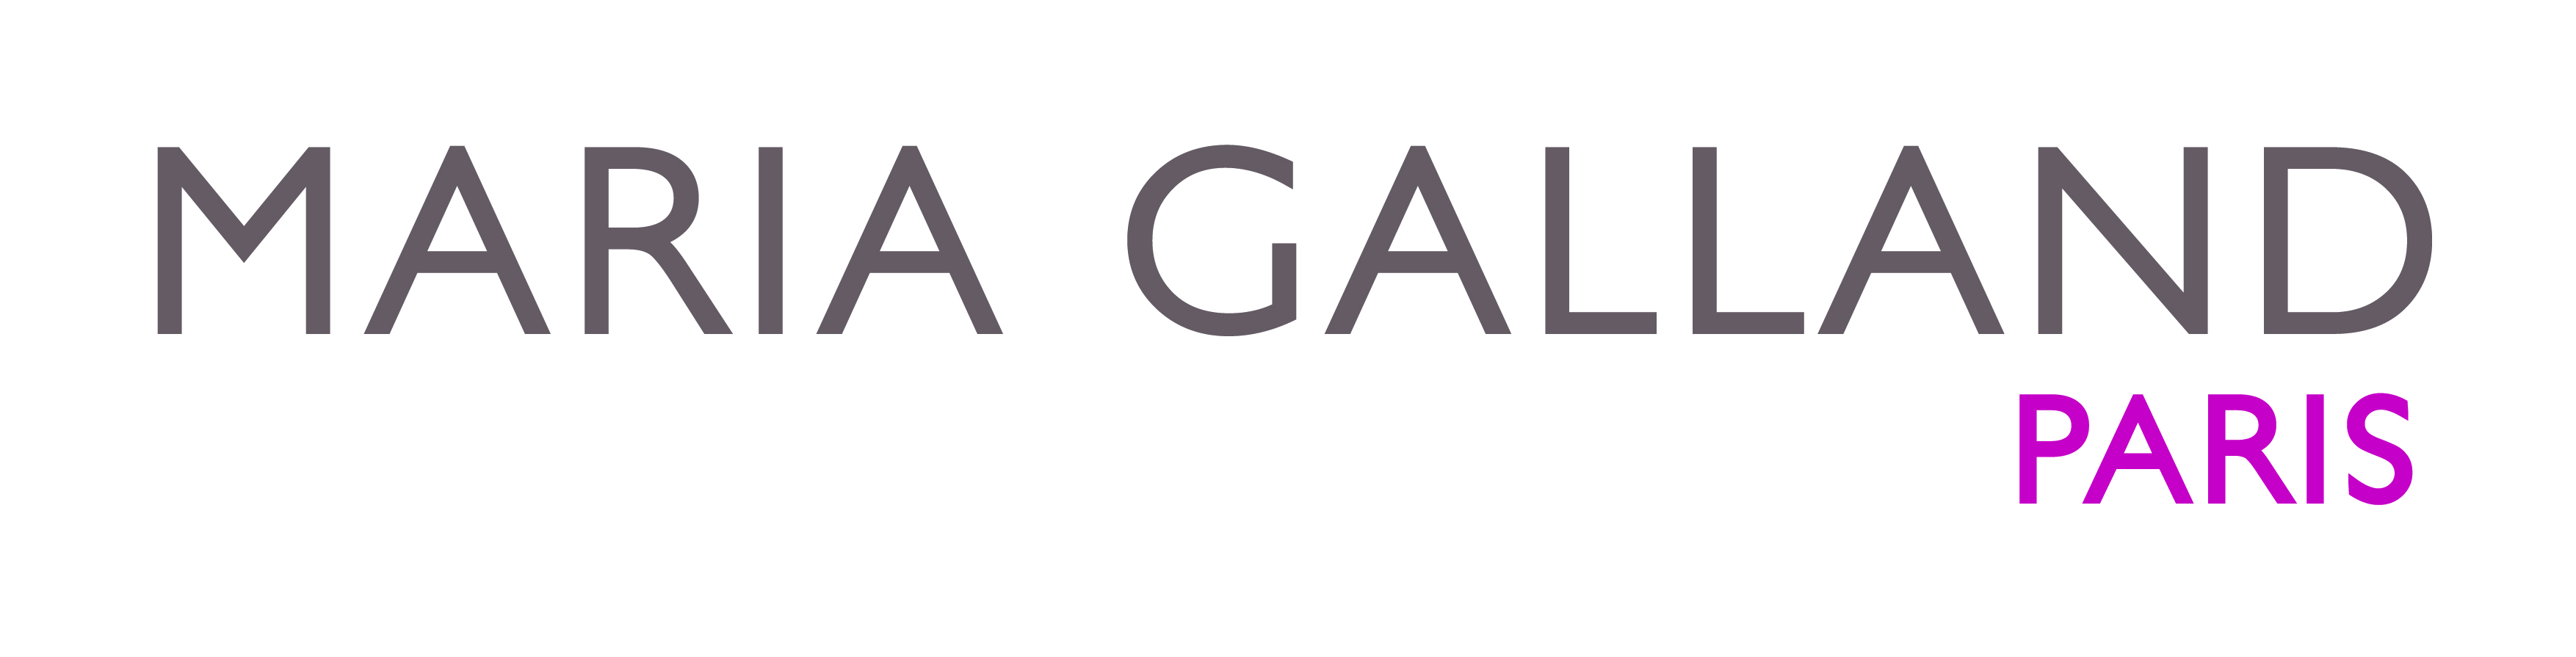 Maria Galland logo